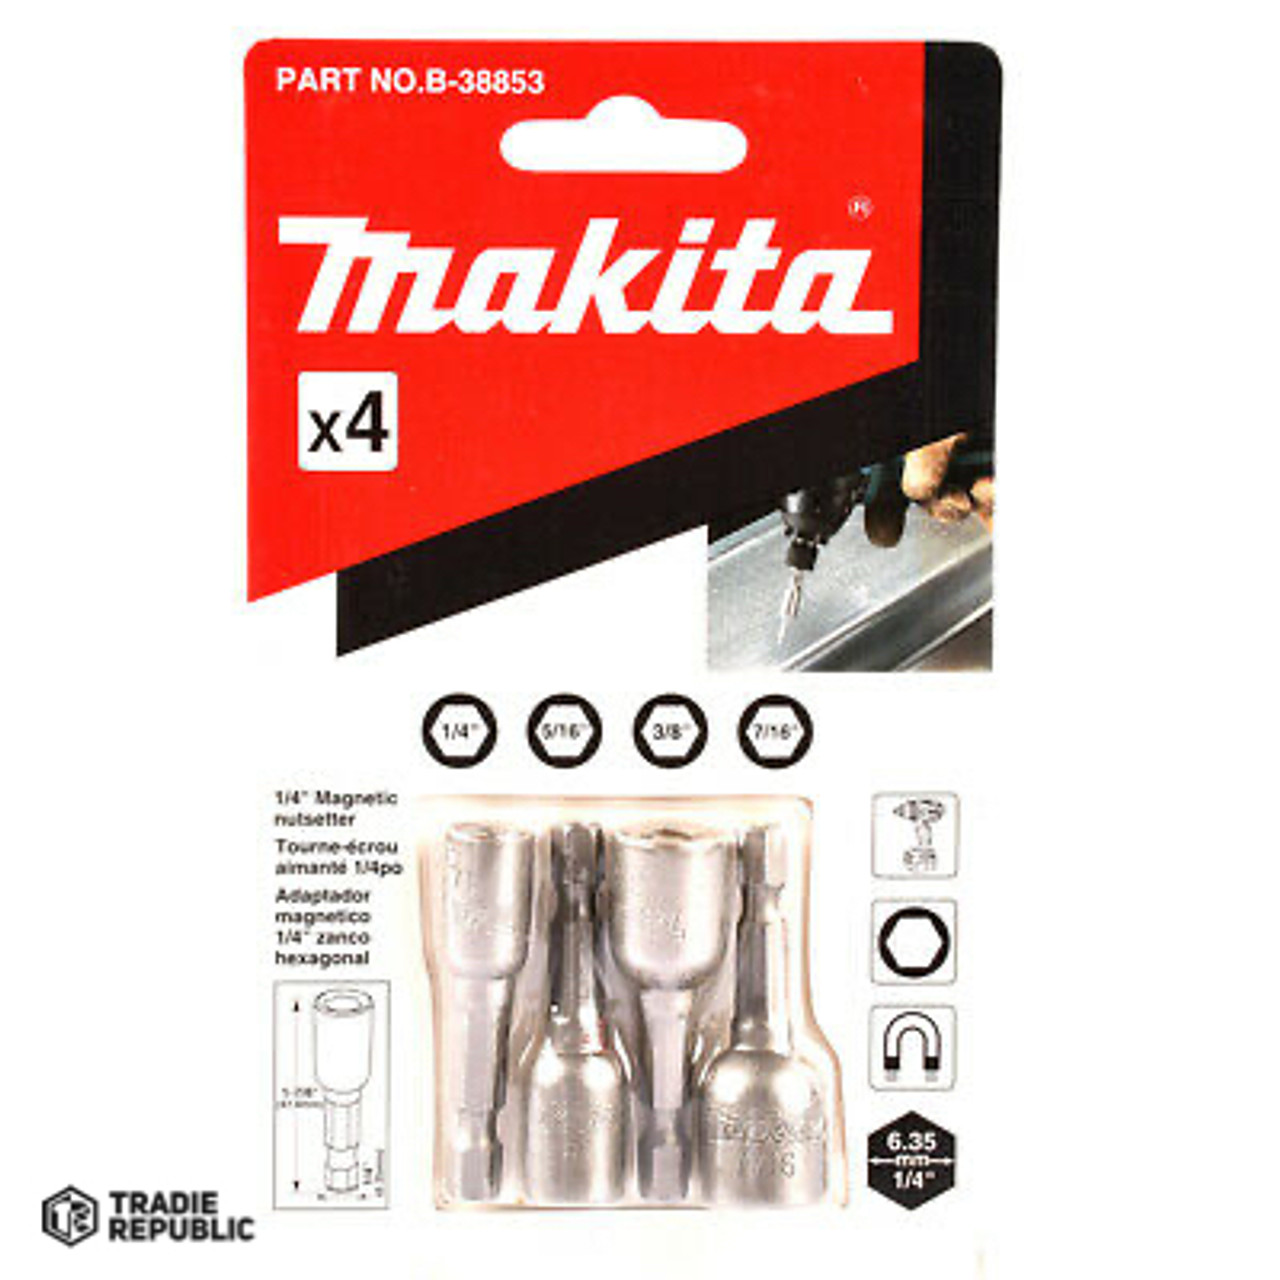 B-38853 Makita Magnetic Nutsetter 1/4_5/16_3/8_7/ 16" 4 Pcs Set B38853